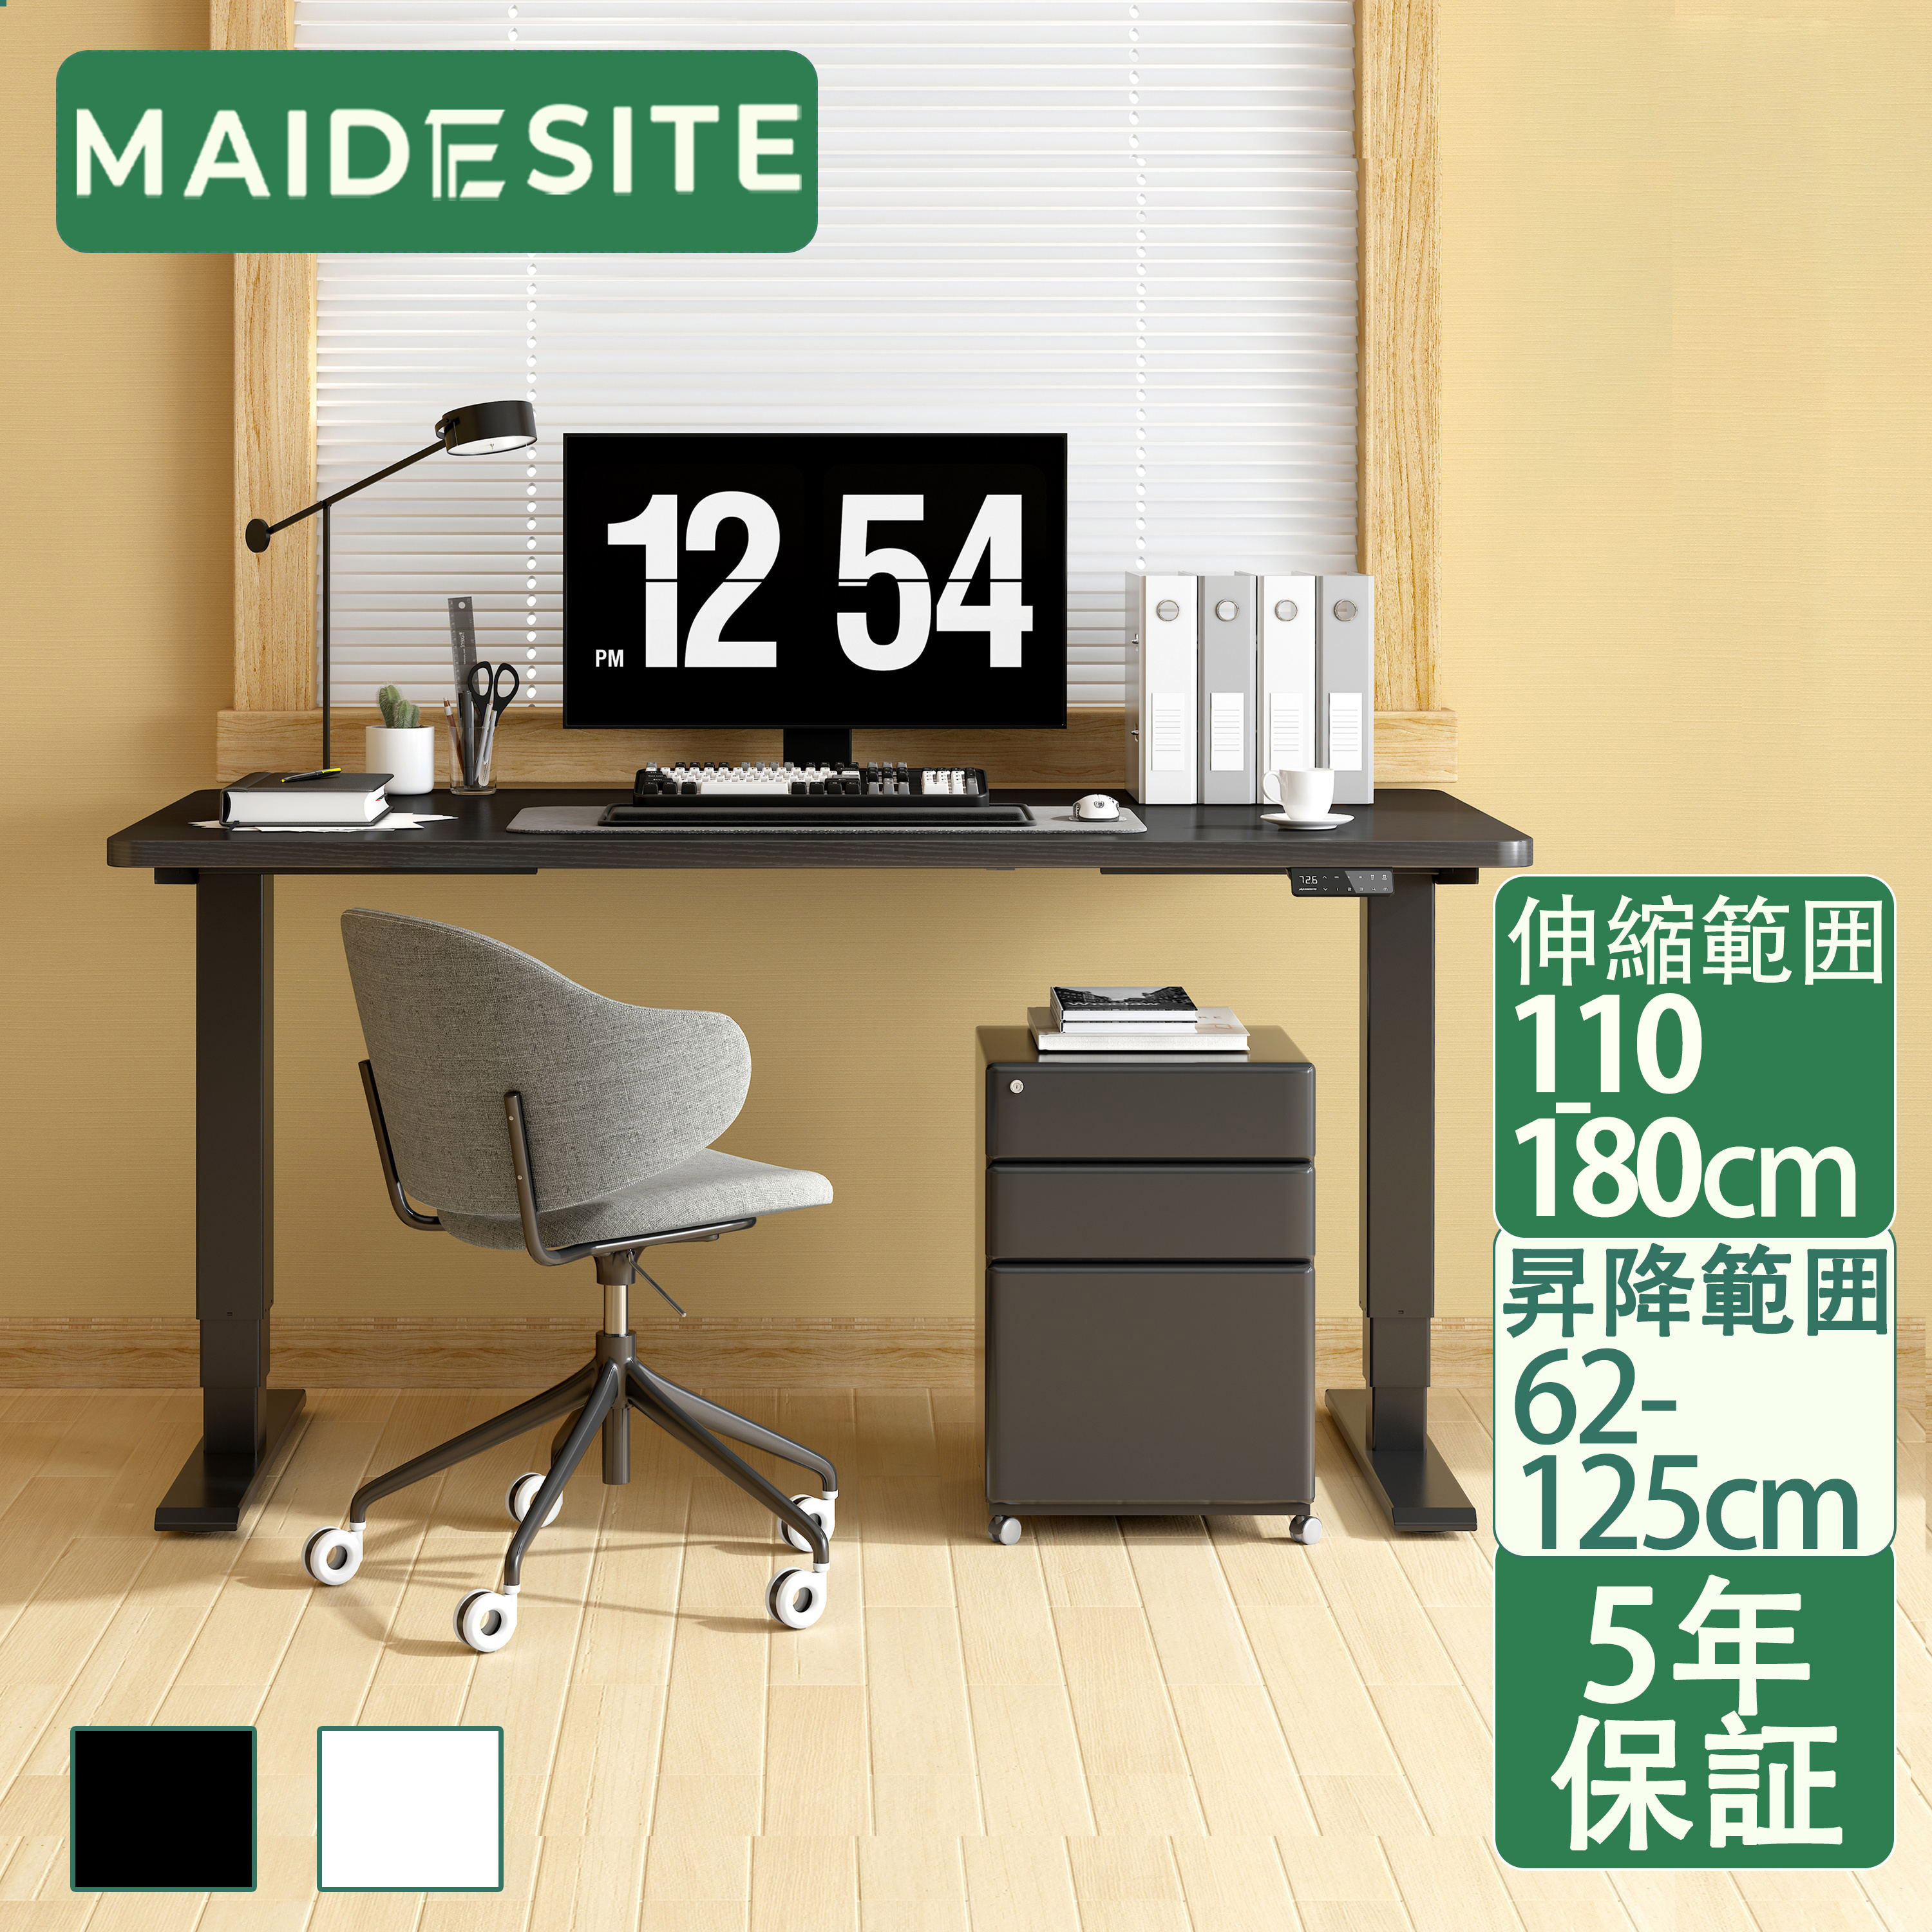 【5年保証 無料交換】Maidesite 昇降デスク 電動 脚 スタンディングデスク 電動昇降式テーブル 2つモーター パソコン…